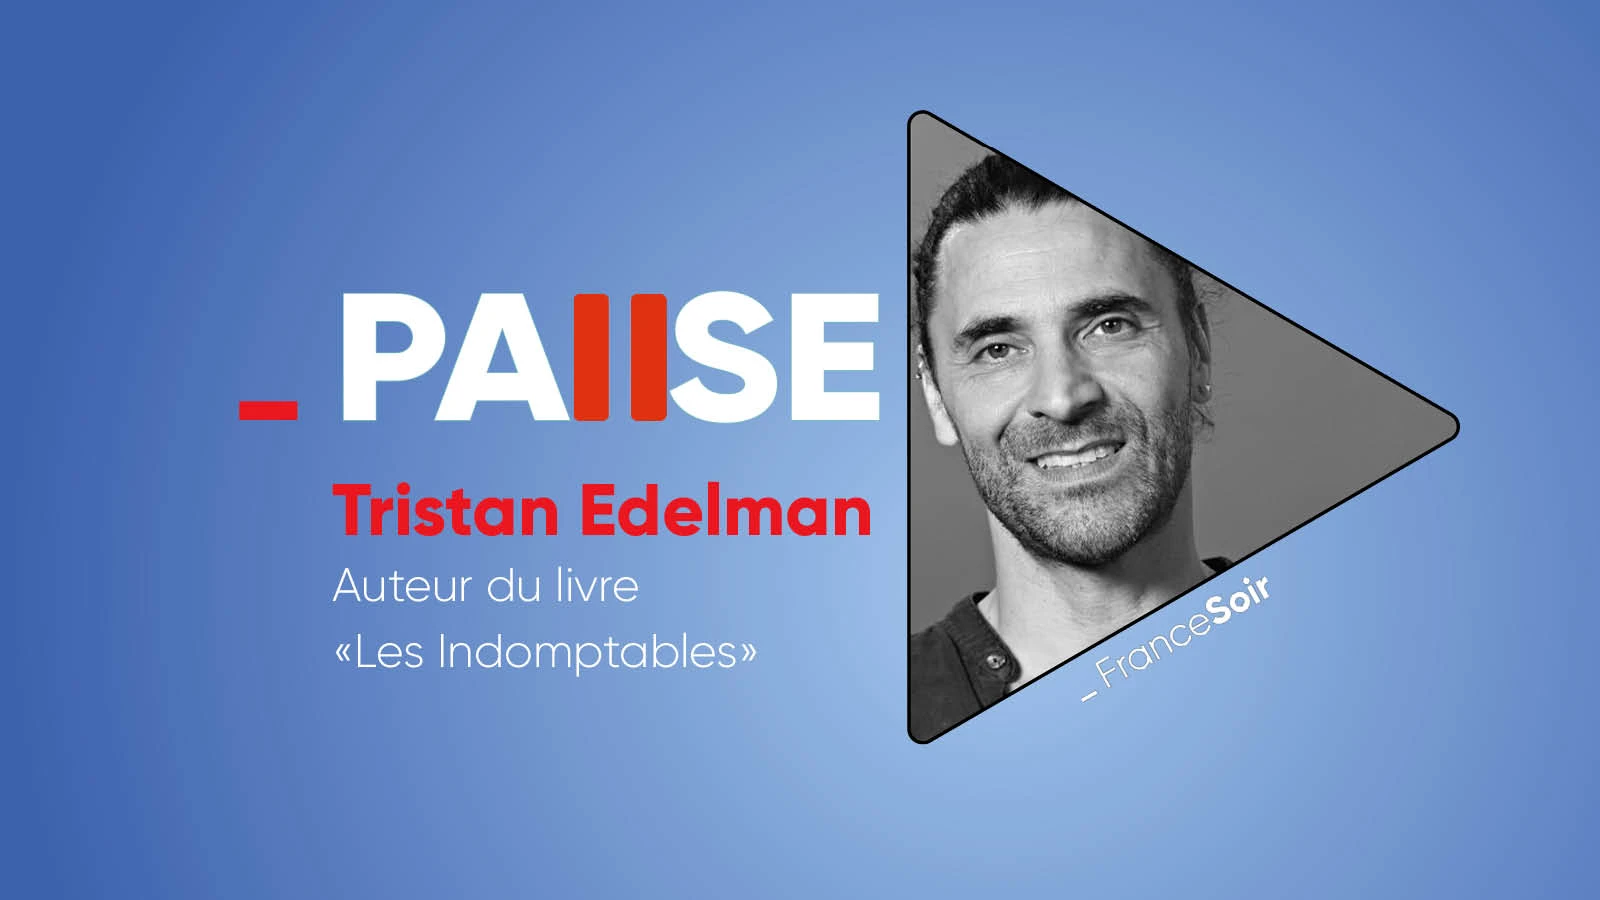 « La faiblesse du gouvernement, c’est l’union des collectifs » Tristan Edelman